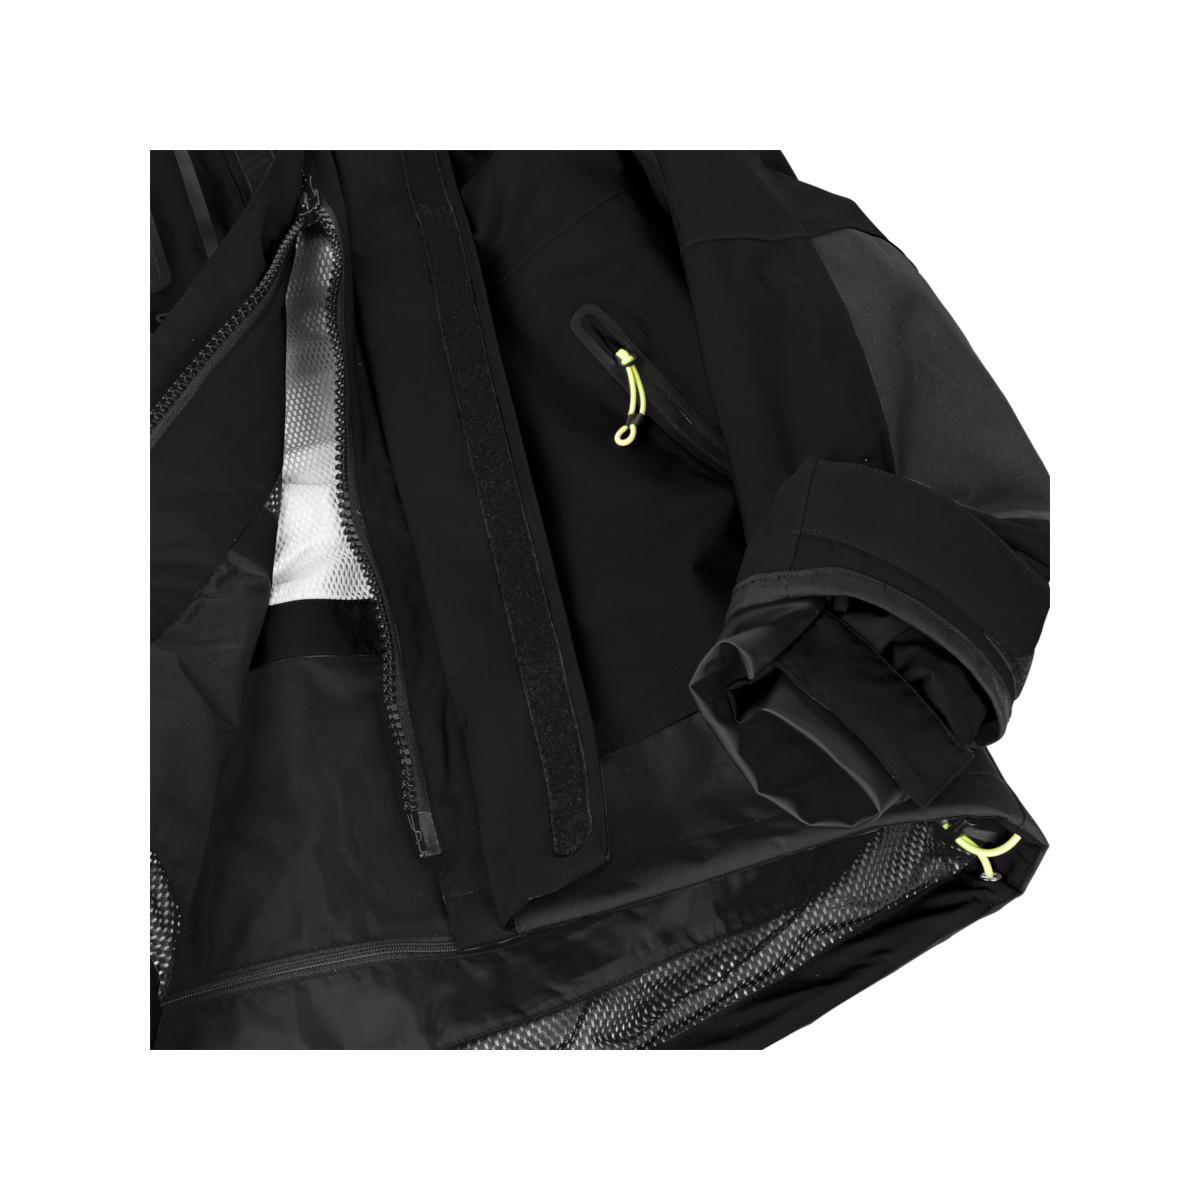 12skipper Magellan veste de quart hauturière, unisexe - noir, taille S